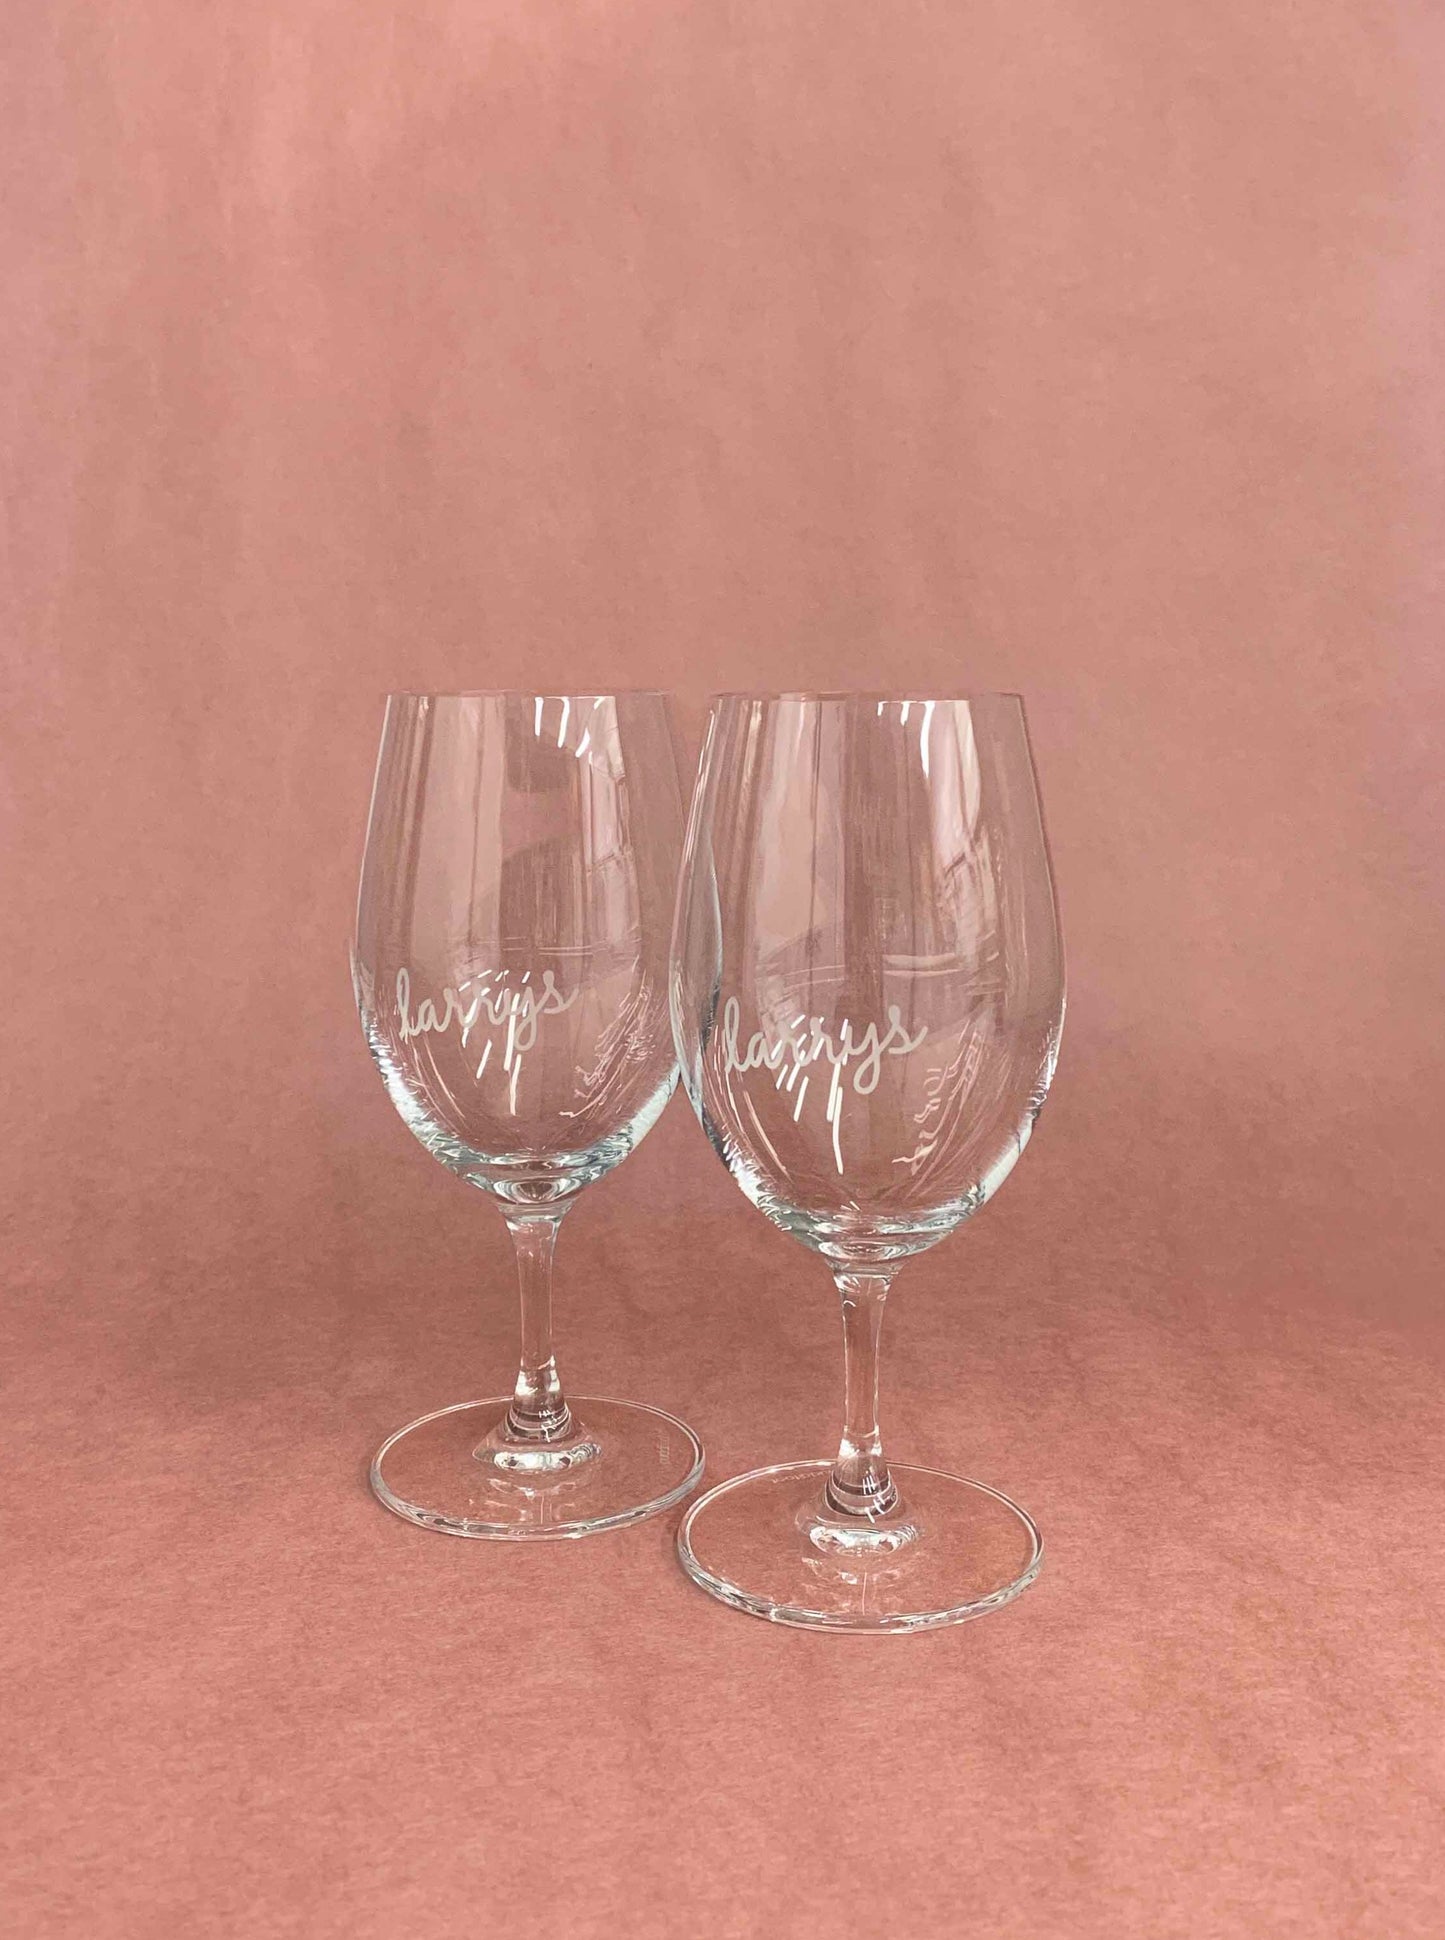 larrys wine glasses